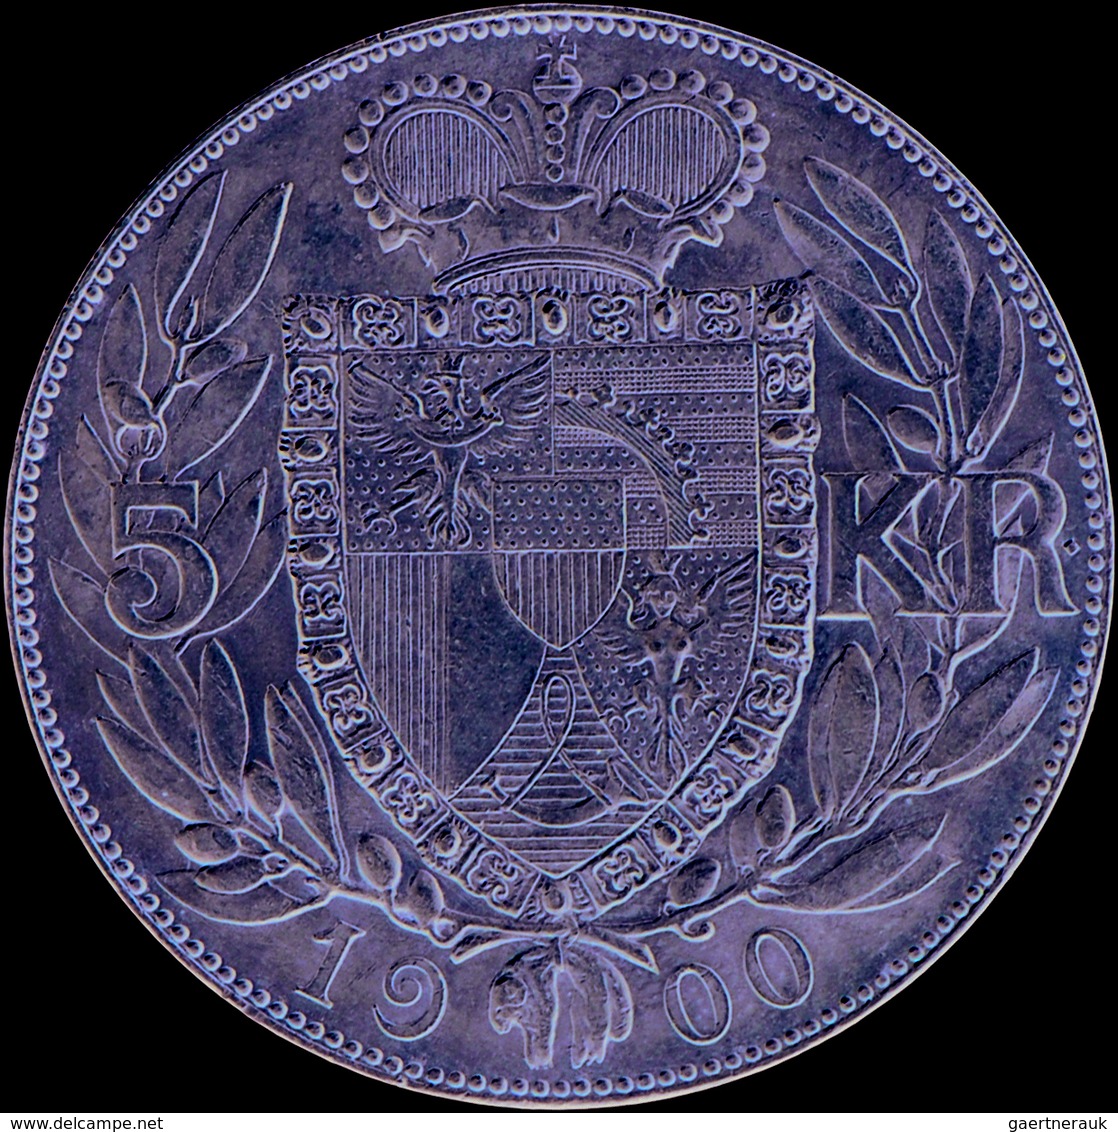 Liechtenstein: Johann II. 1858-1929: 5 Kronen 1900, Dav. 216, HMZ 2-1376b, Auflage 5.000 Expl., Min. - Liechtenstein